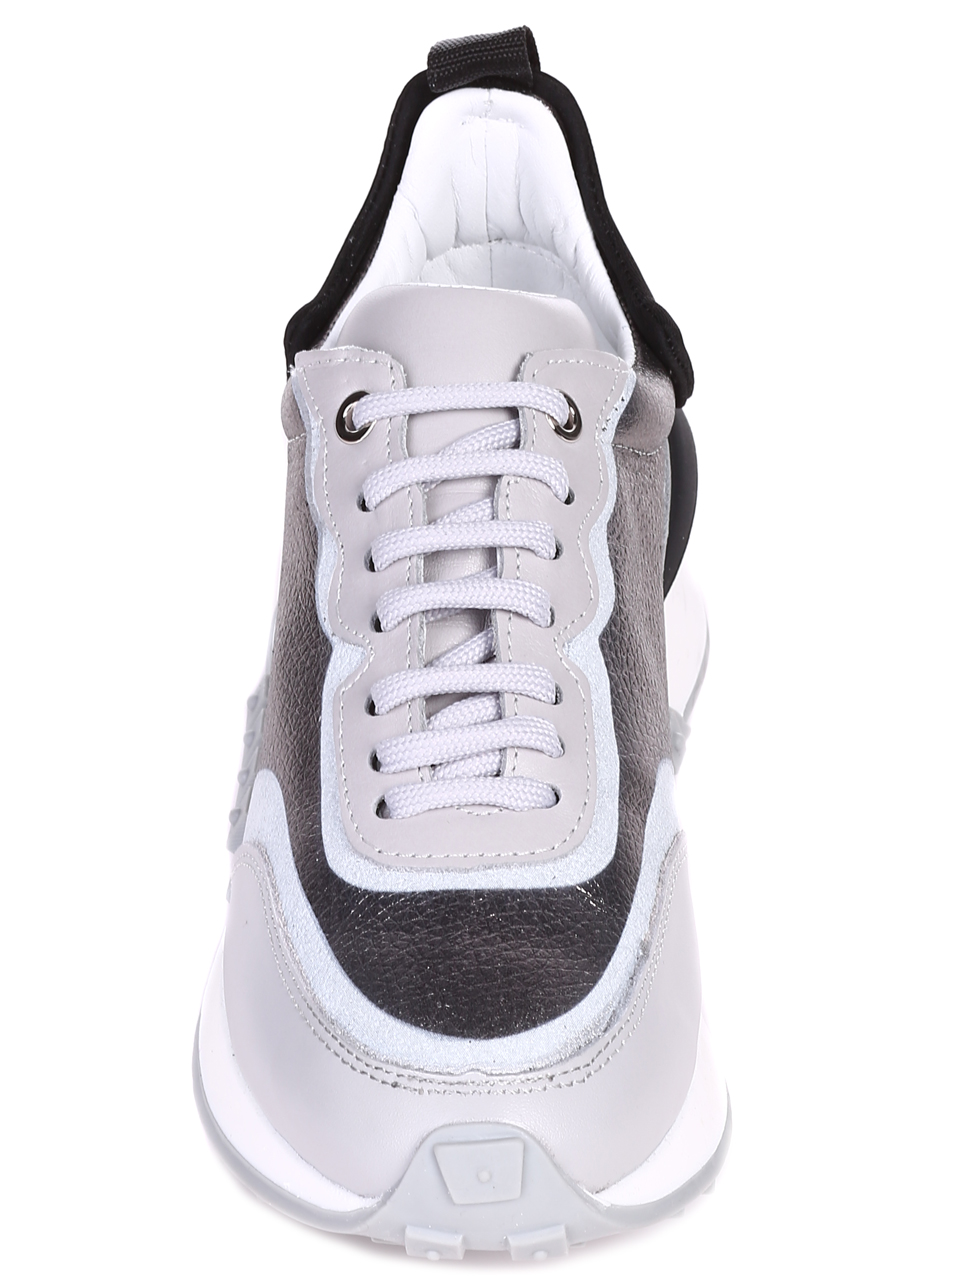 Ежедневни дамски обувки от естествена кожа в сиво 3AT-22301 grey